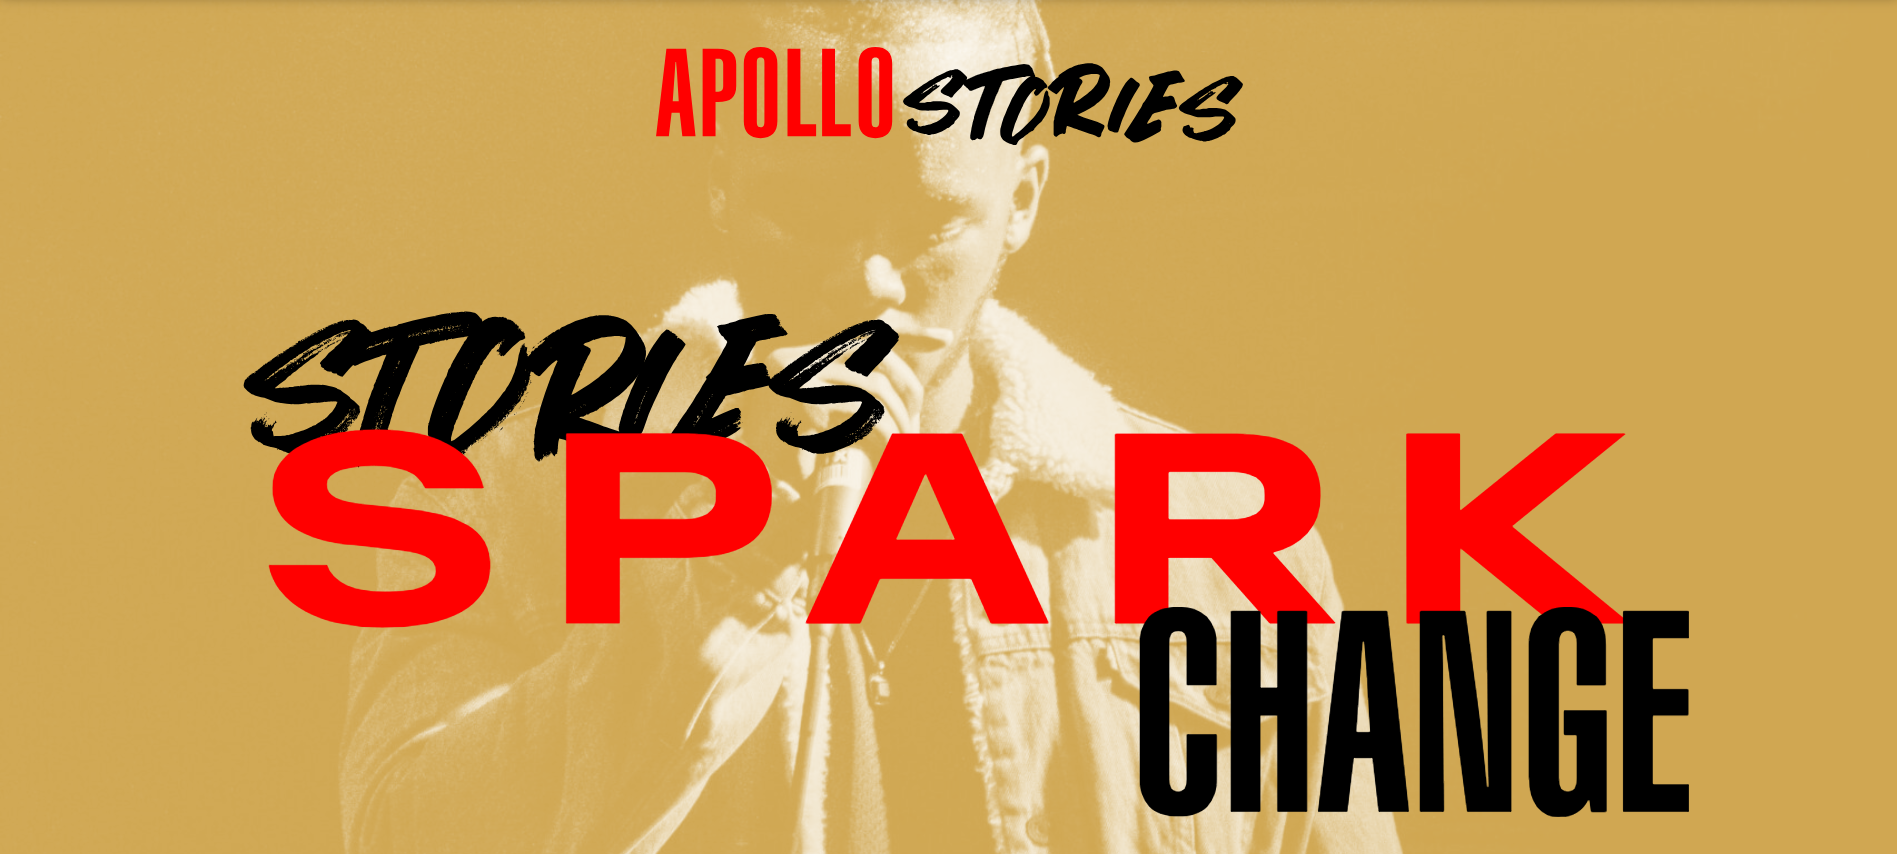 Apollo Stories Hero